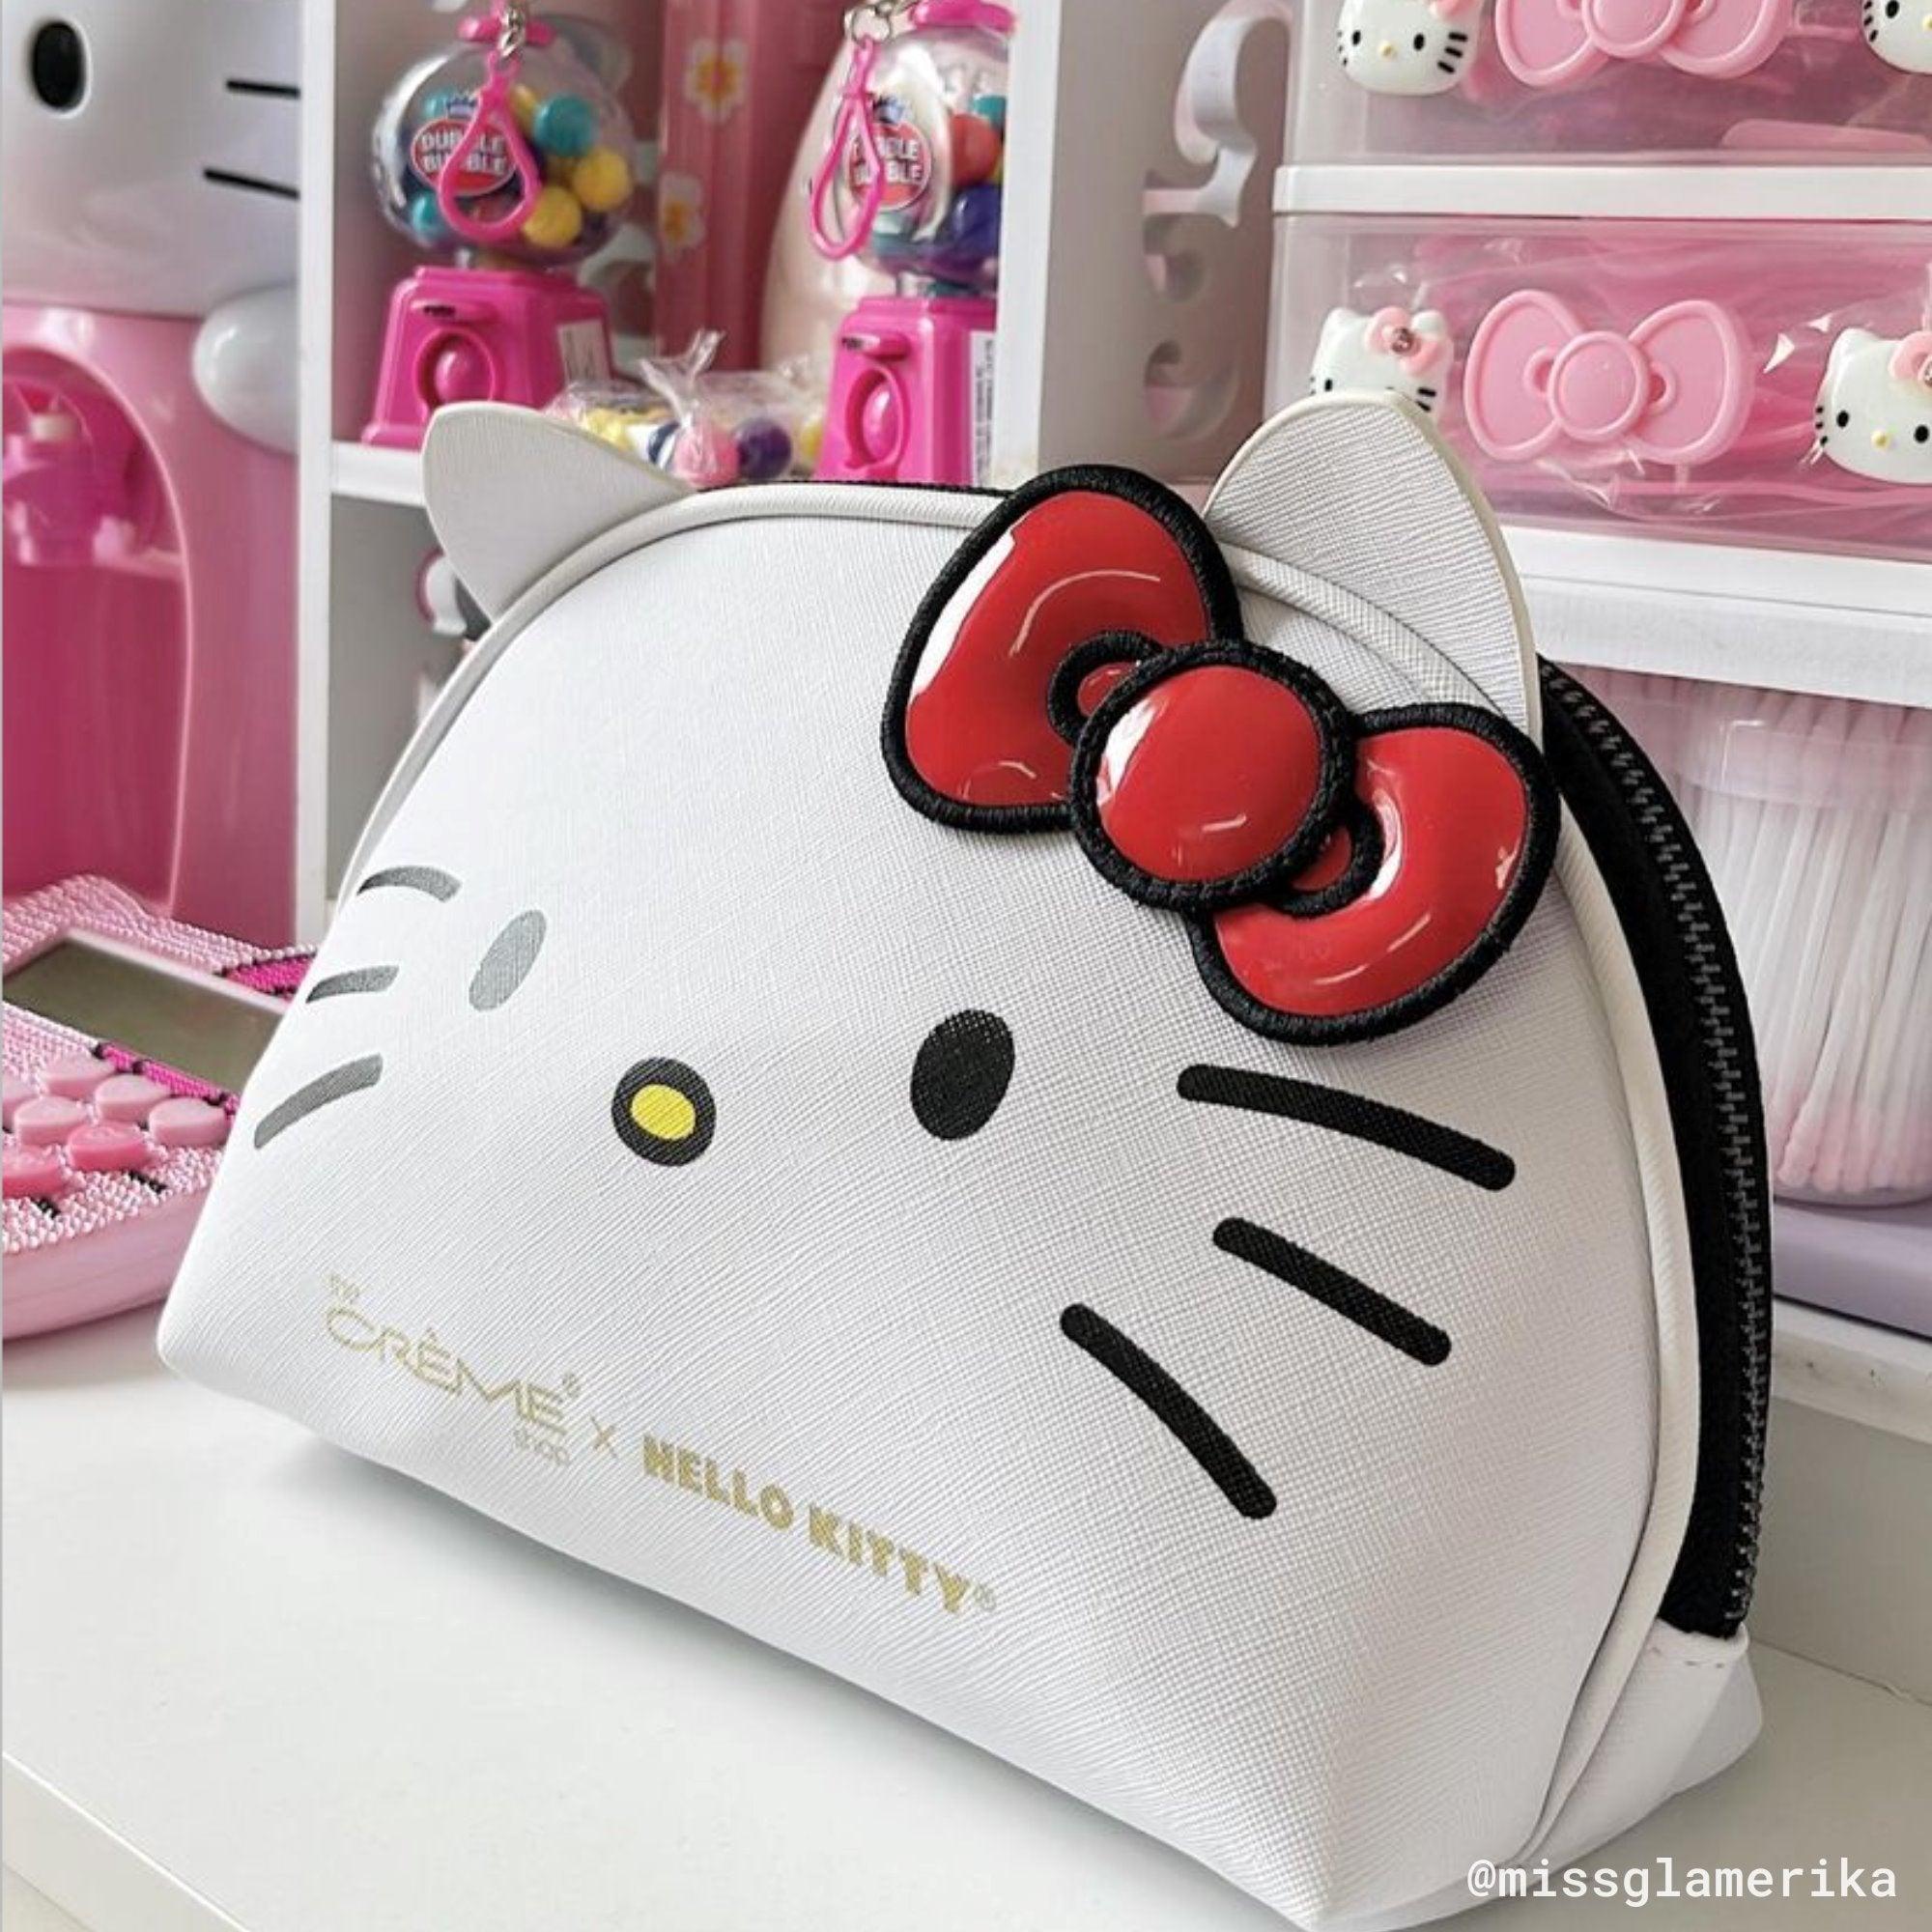 Hello Kitty Three Pocket Handbags | Mercari